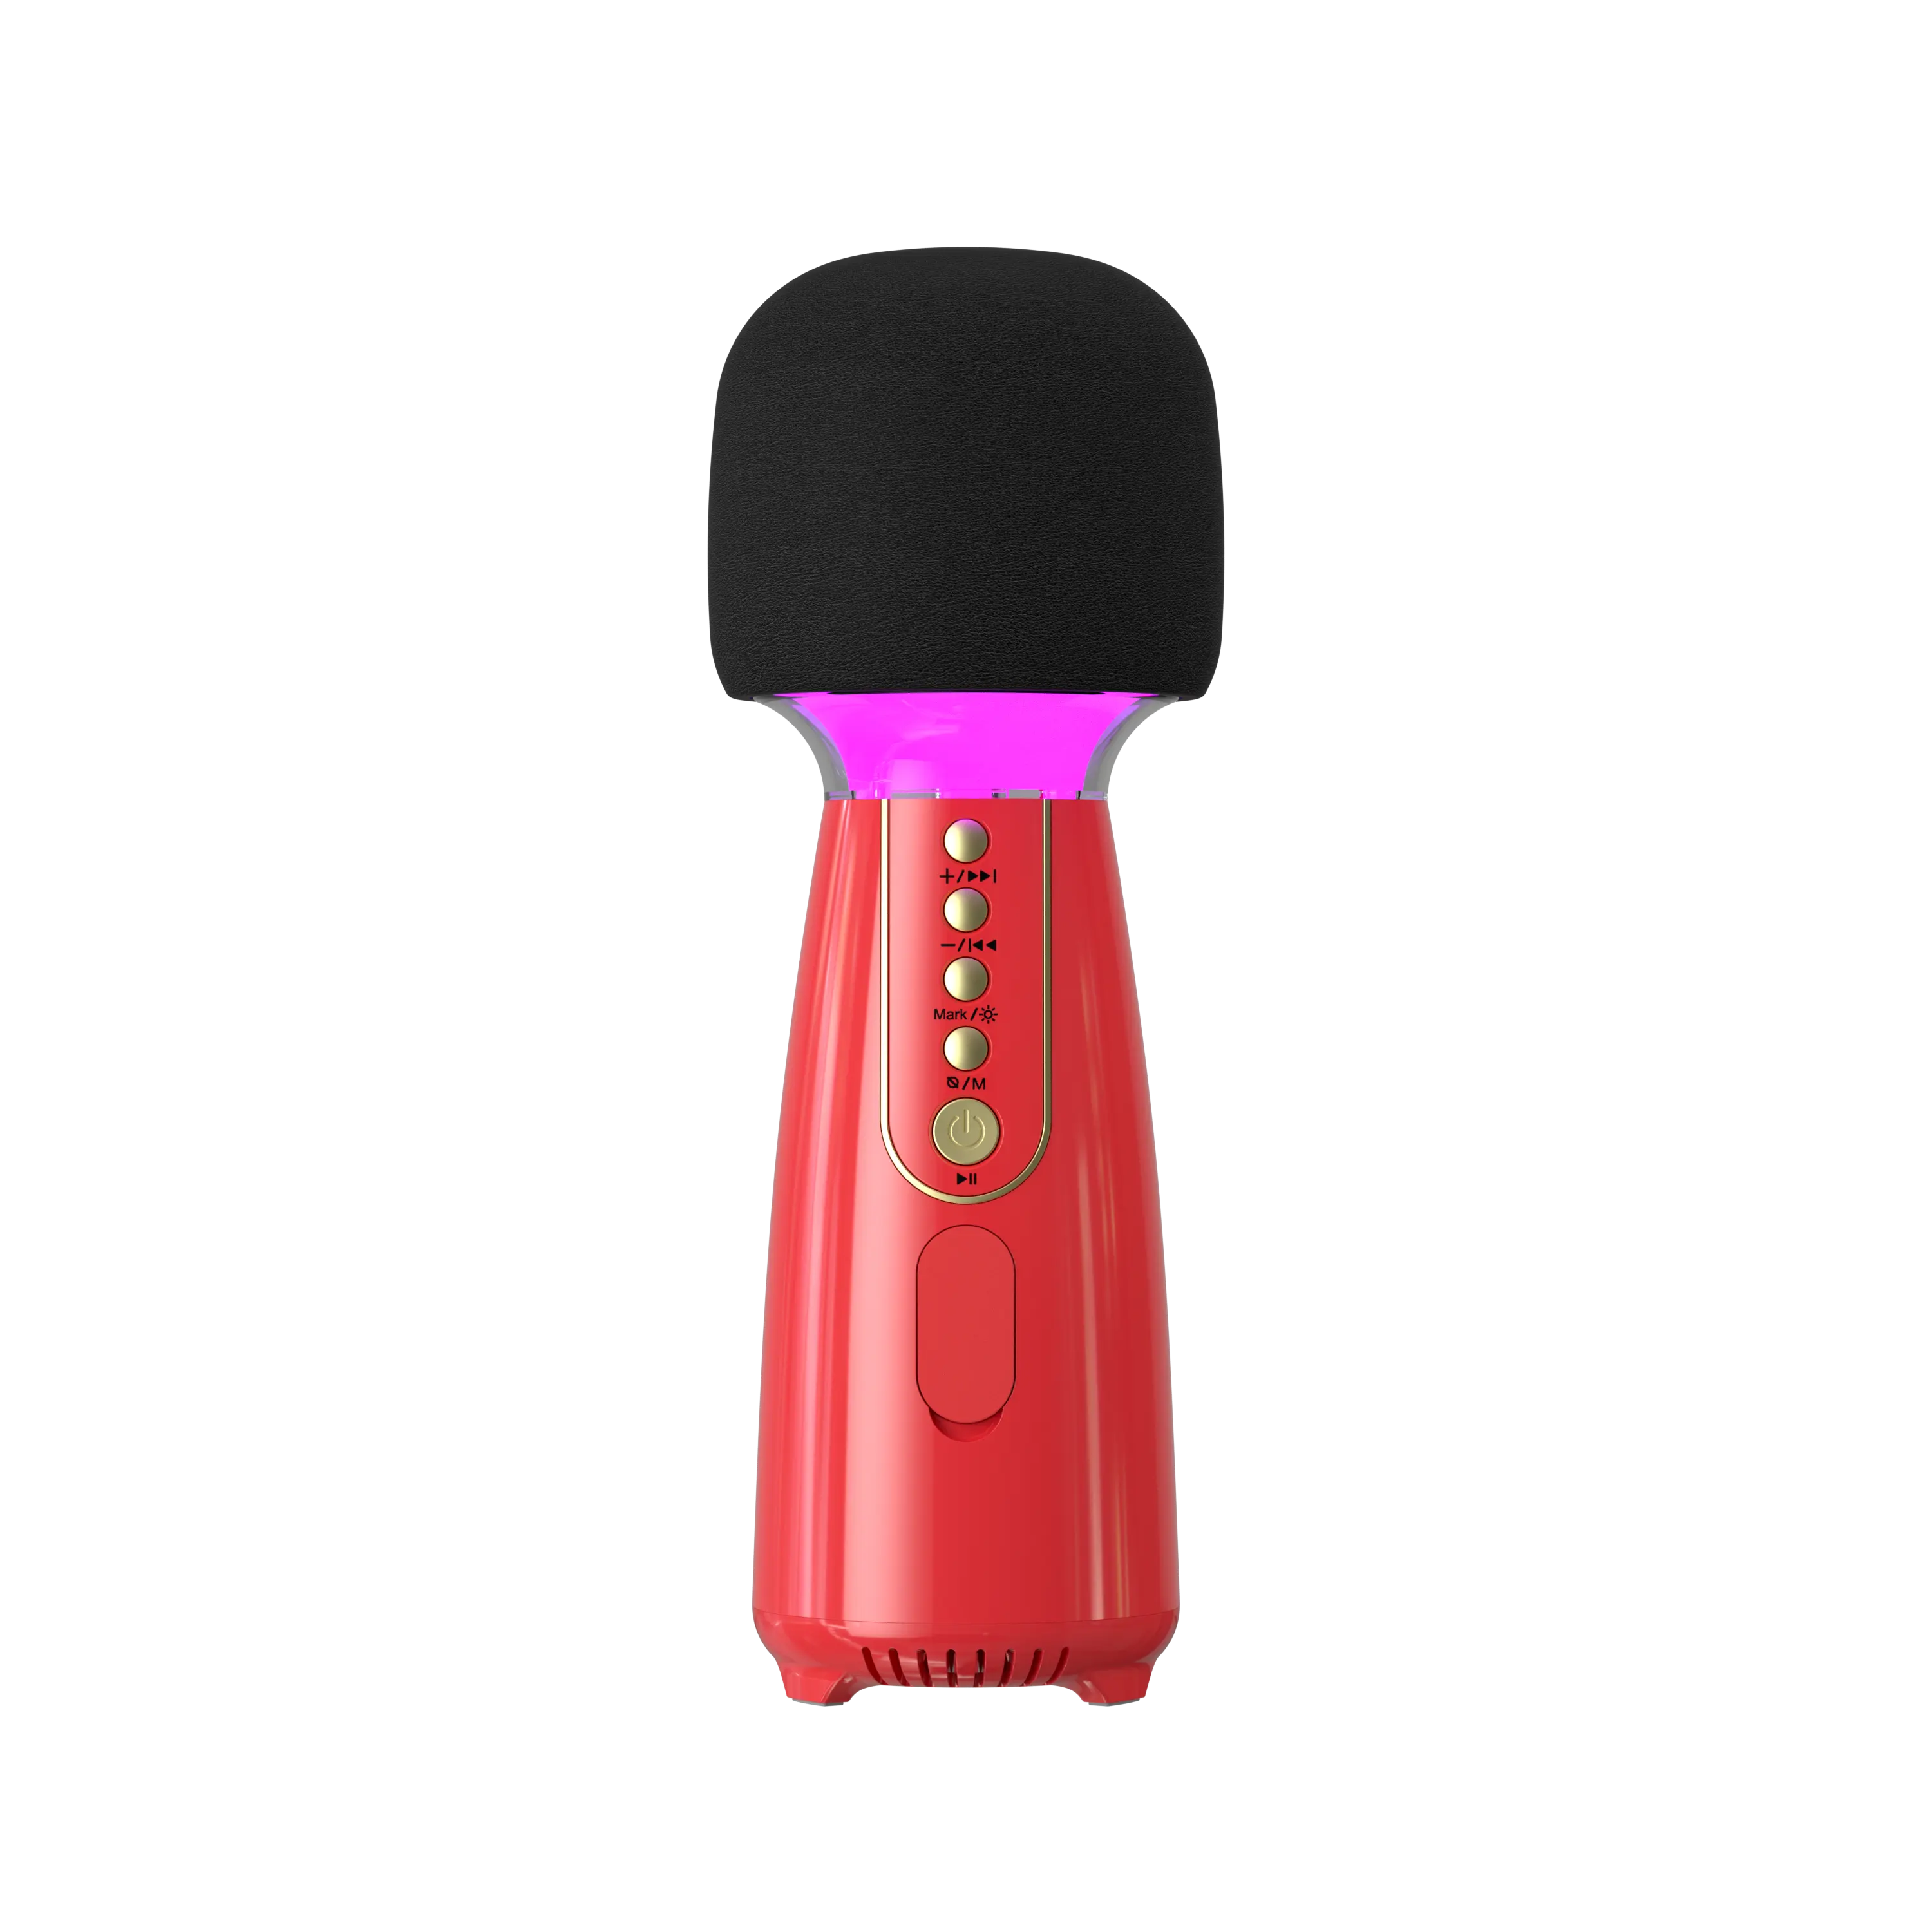 L868 microfono Karaoke Wireless batteria integrata bassi 3D famiglia domestica KTV lettore musicale canto altoparlante supporto TF Card